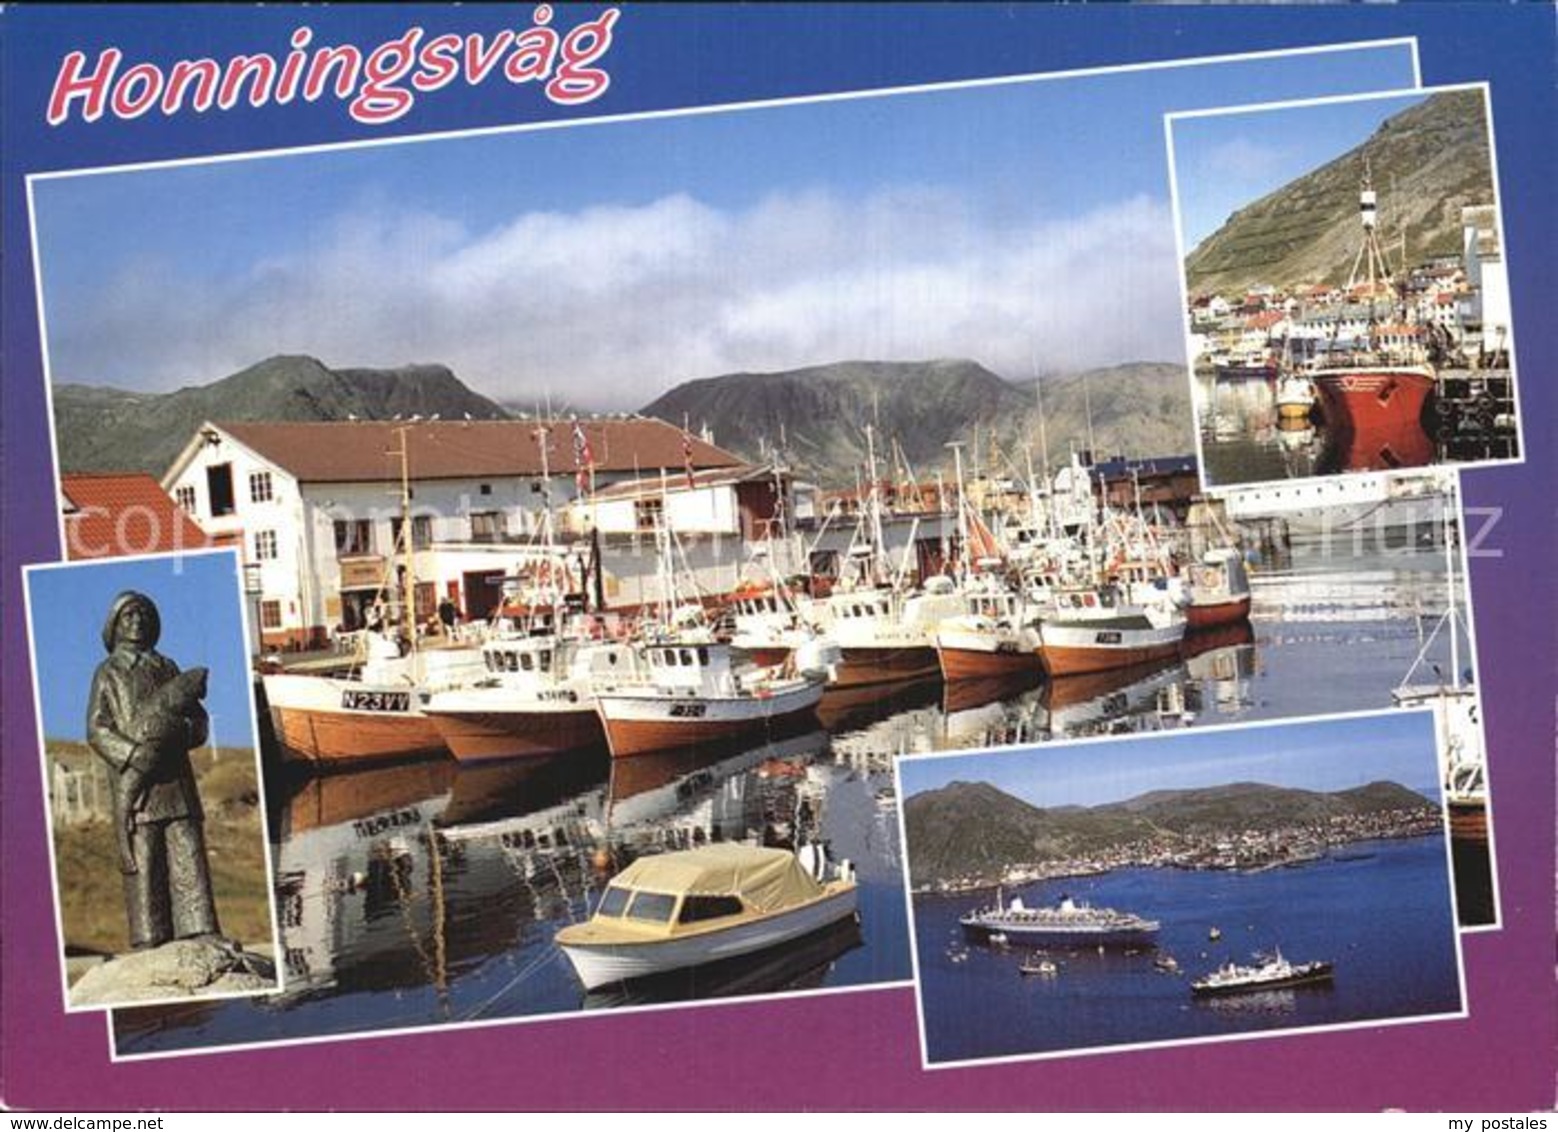 72576504 Honningsvag Denkmal Statue Hafen Fischkutter Passagierschiff Norwegen - Norvège